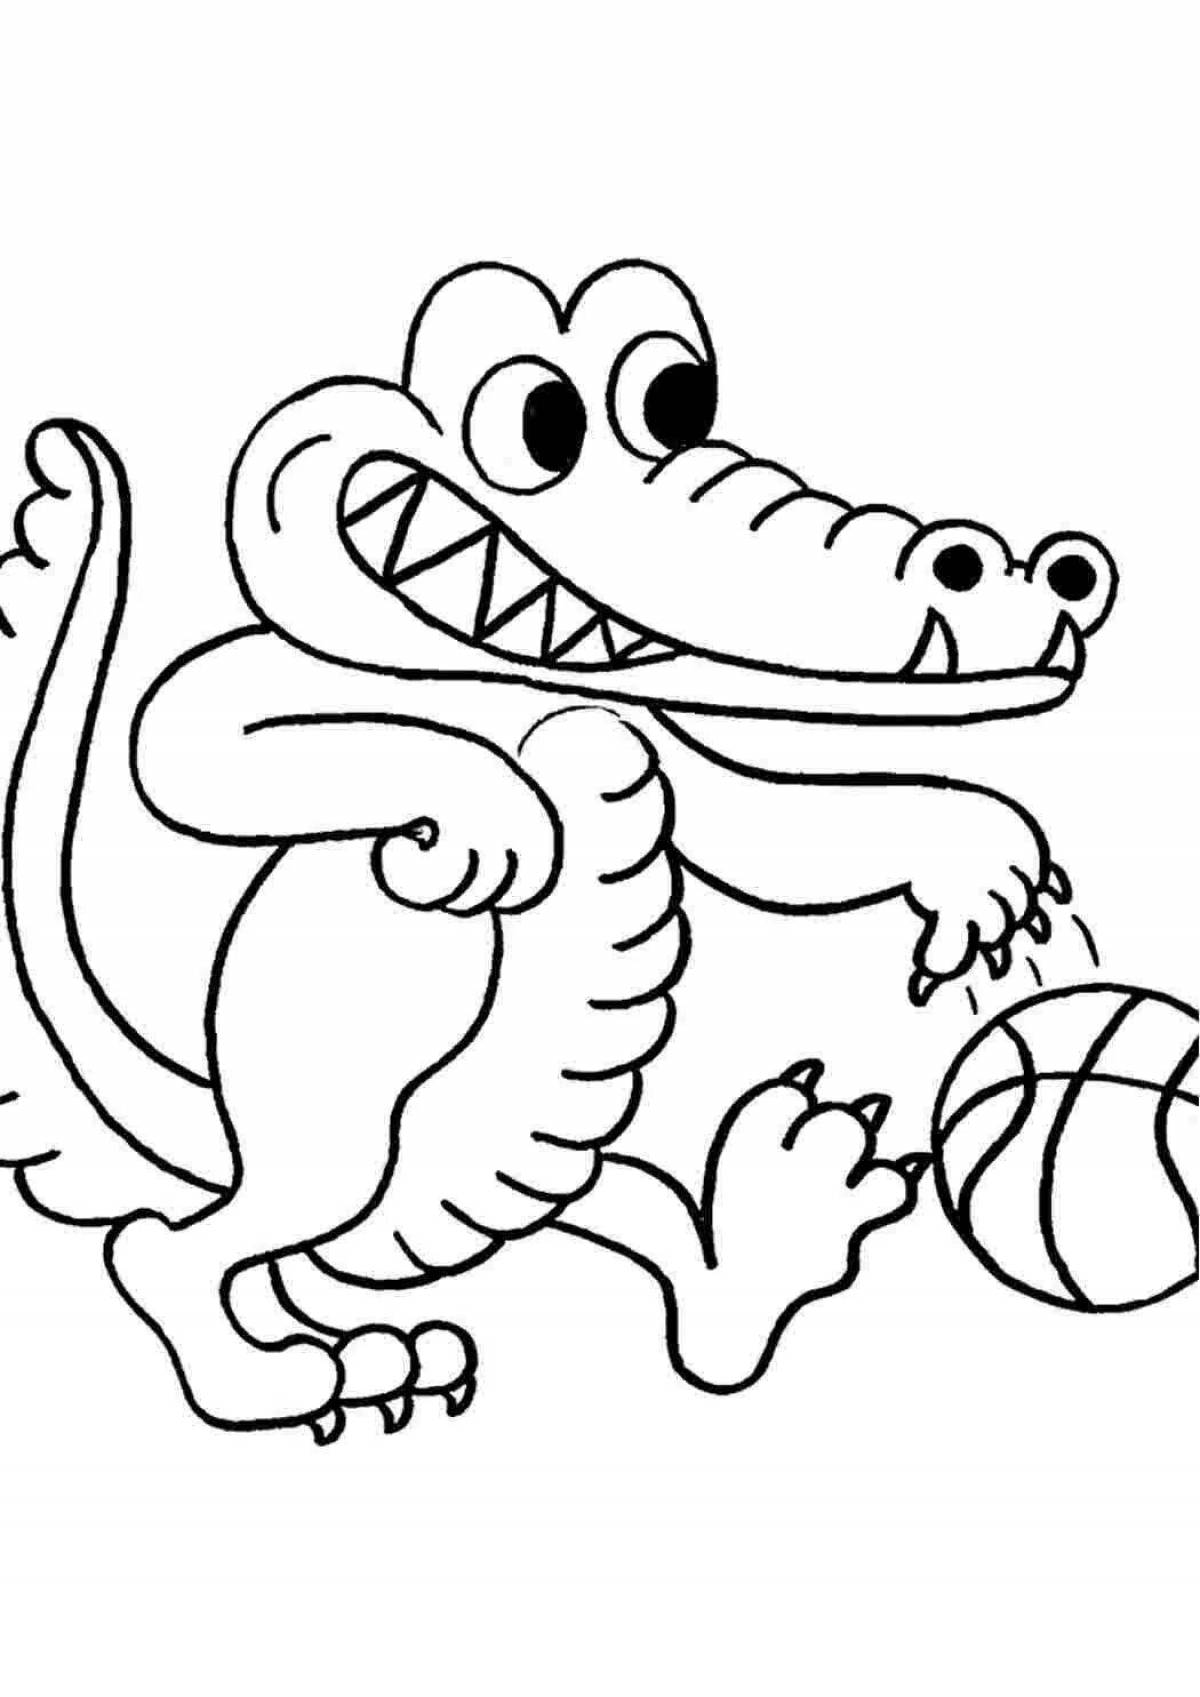 Творческая раскраска крокодила для детей 3-4 лет